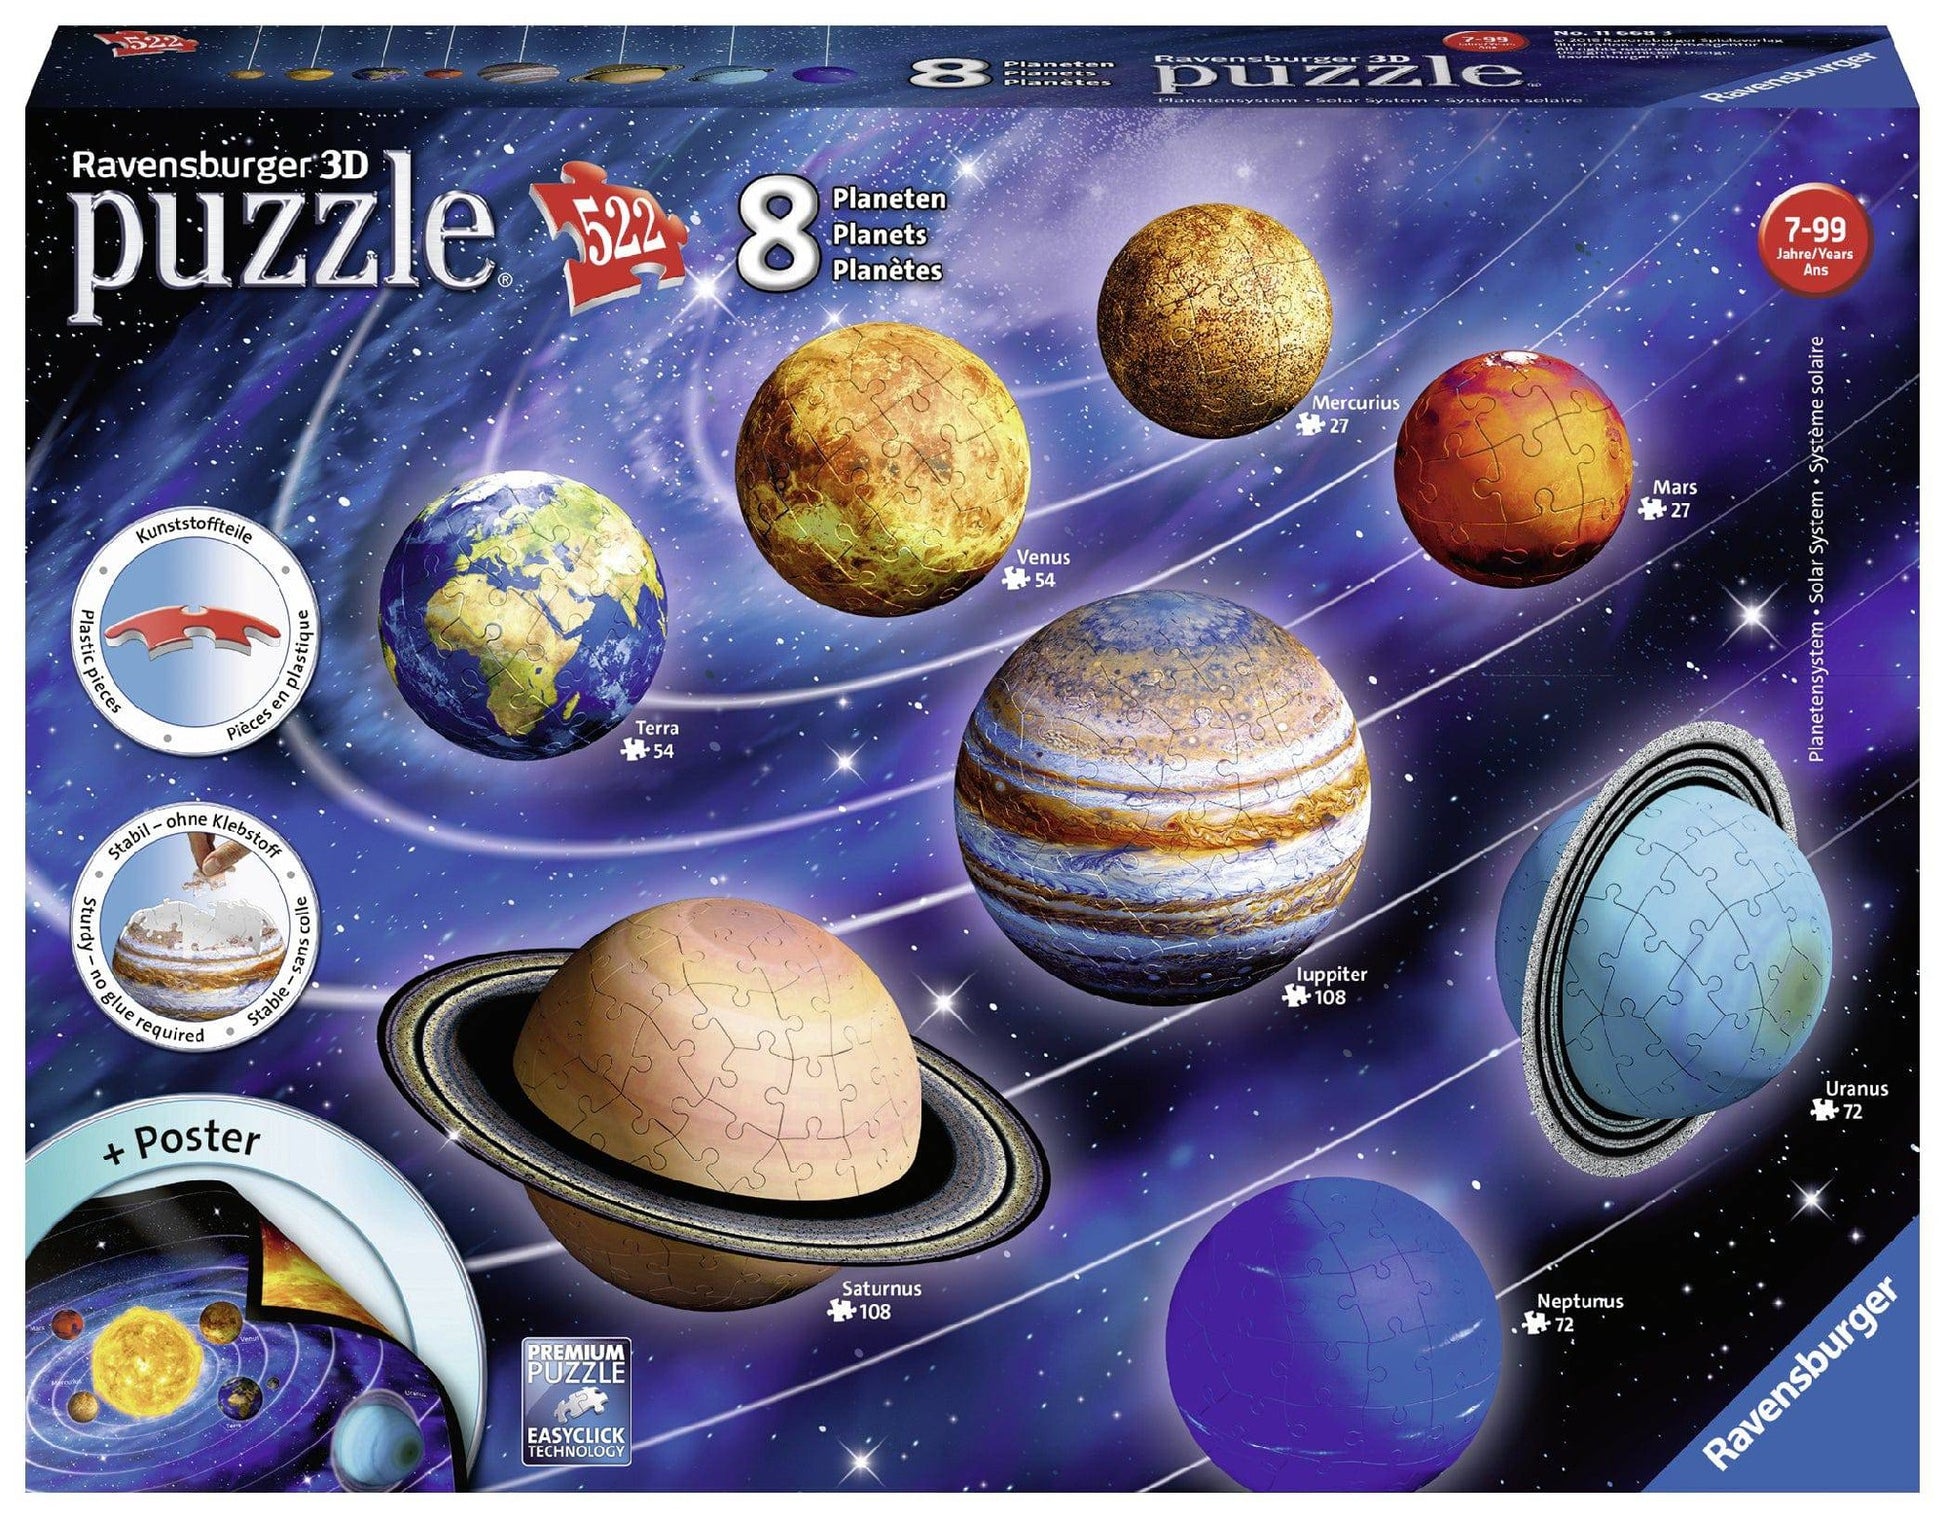 3d Puzzle 522pc - Ravensburger - Solar System 8 Planets